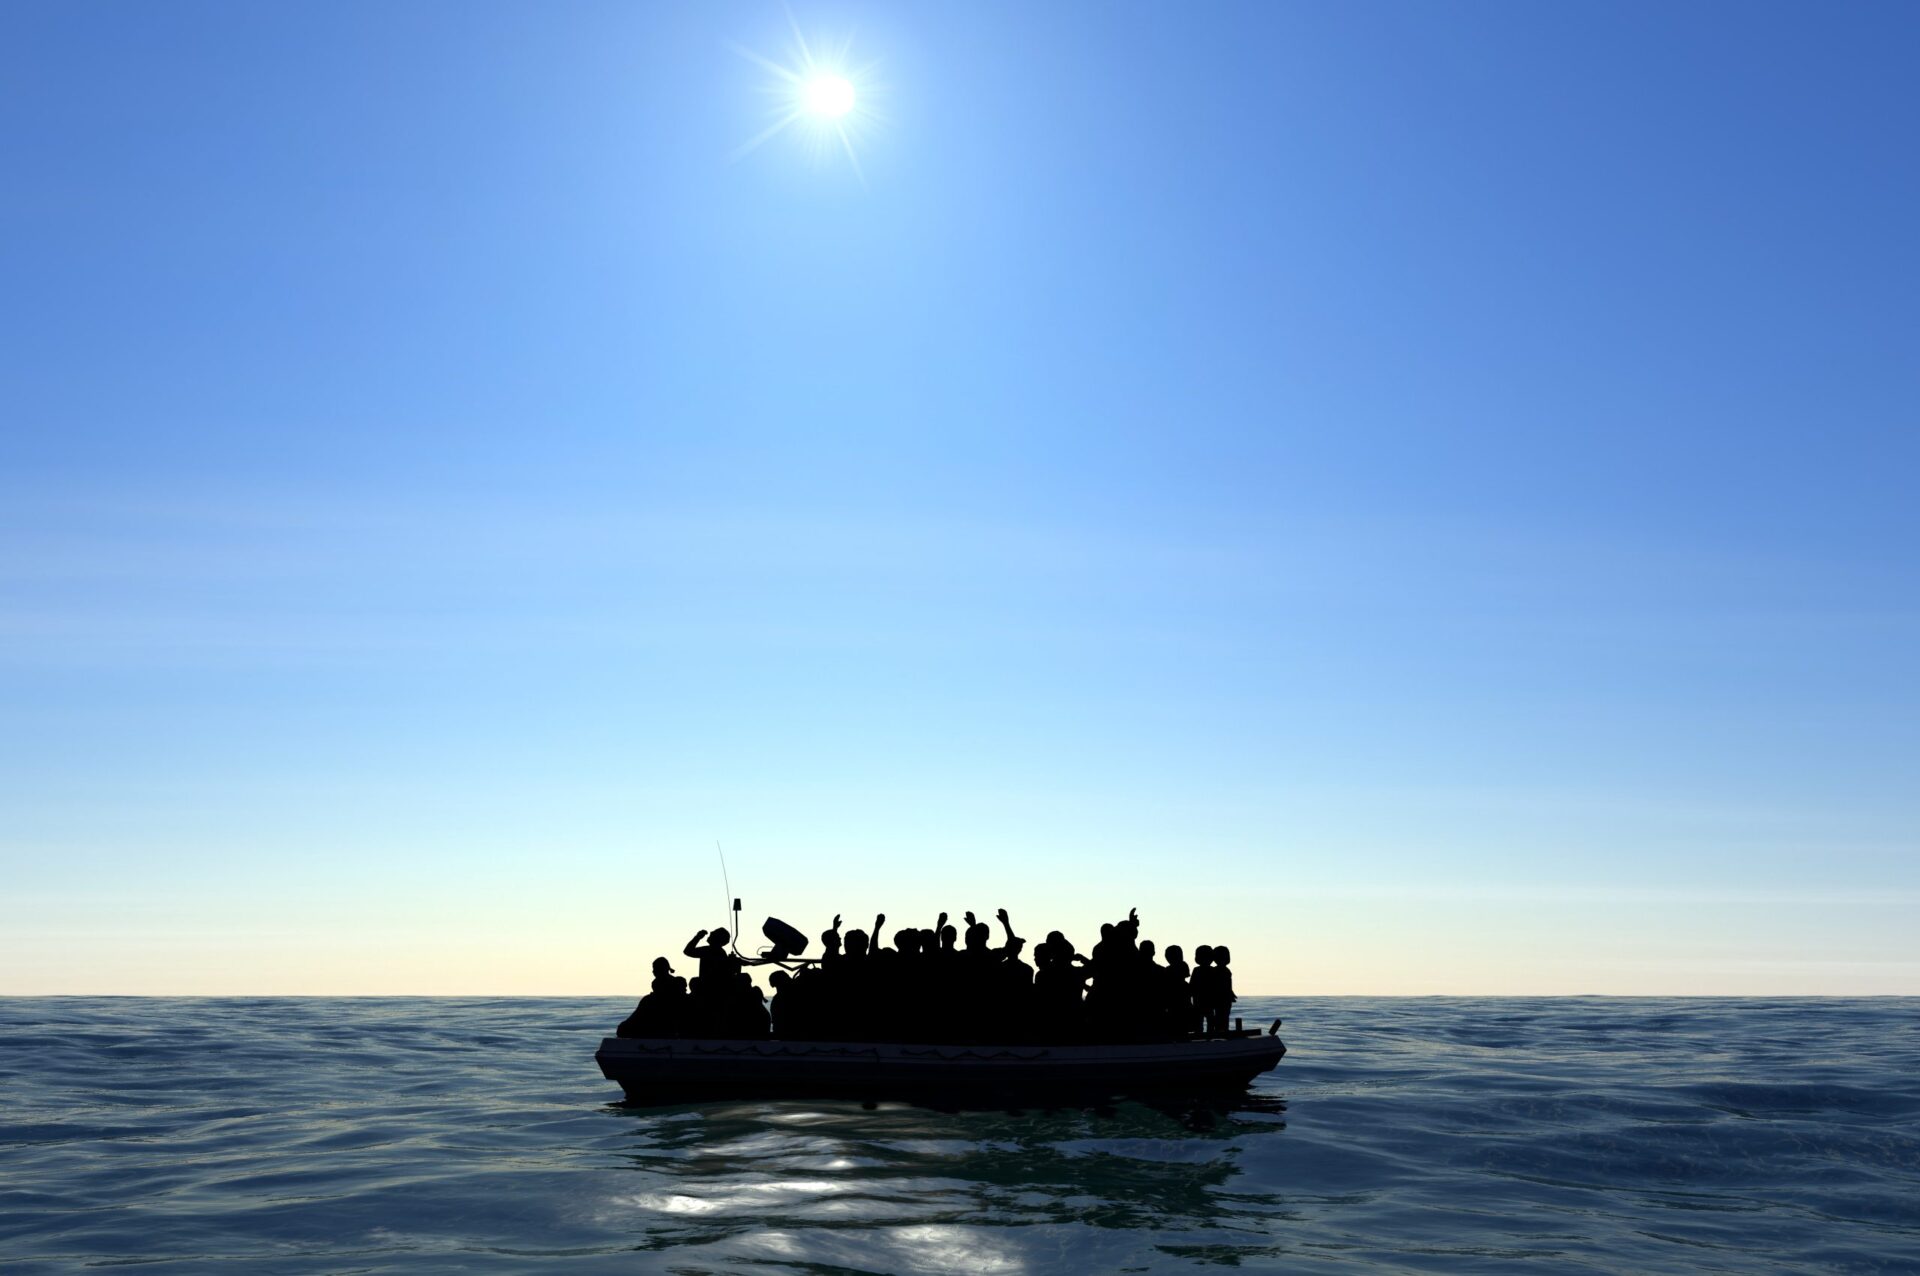 Espanha quer debater políticas migratórias da Europa